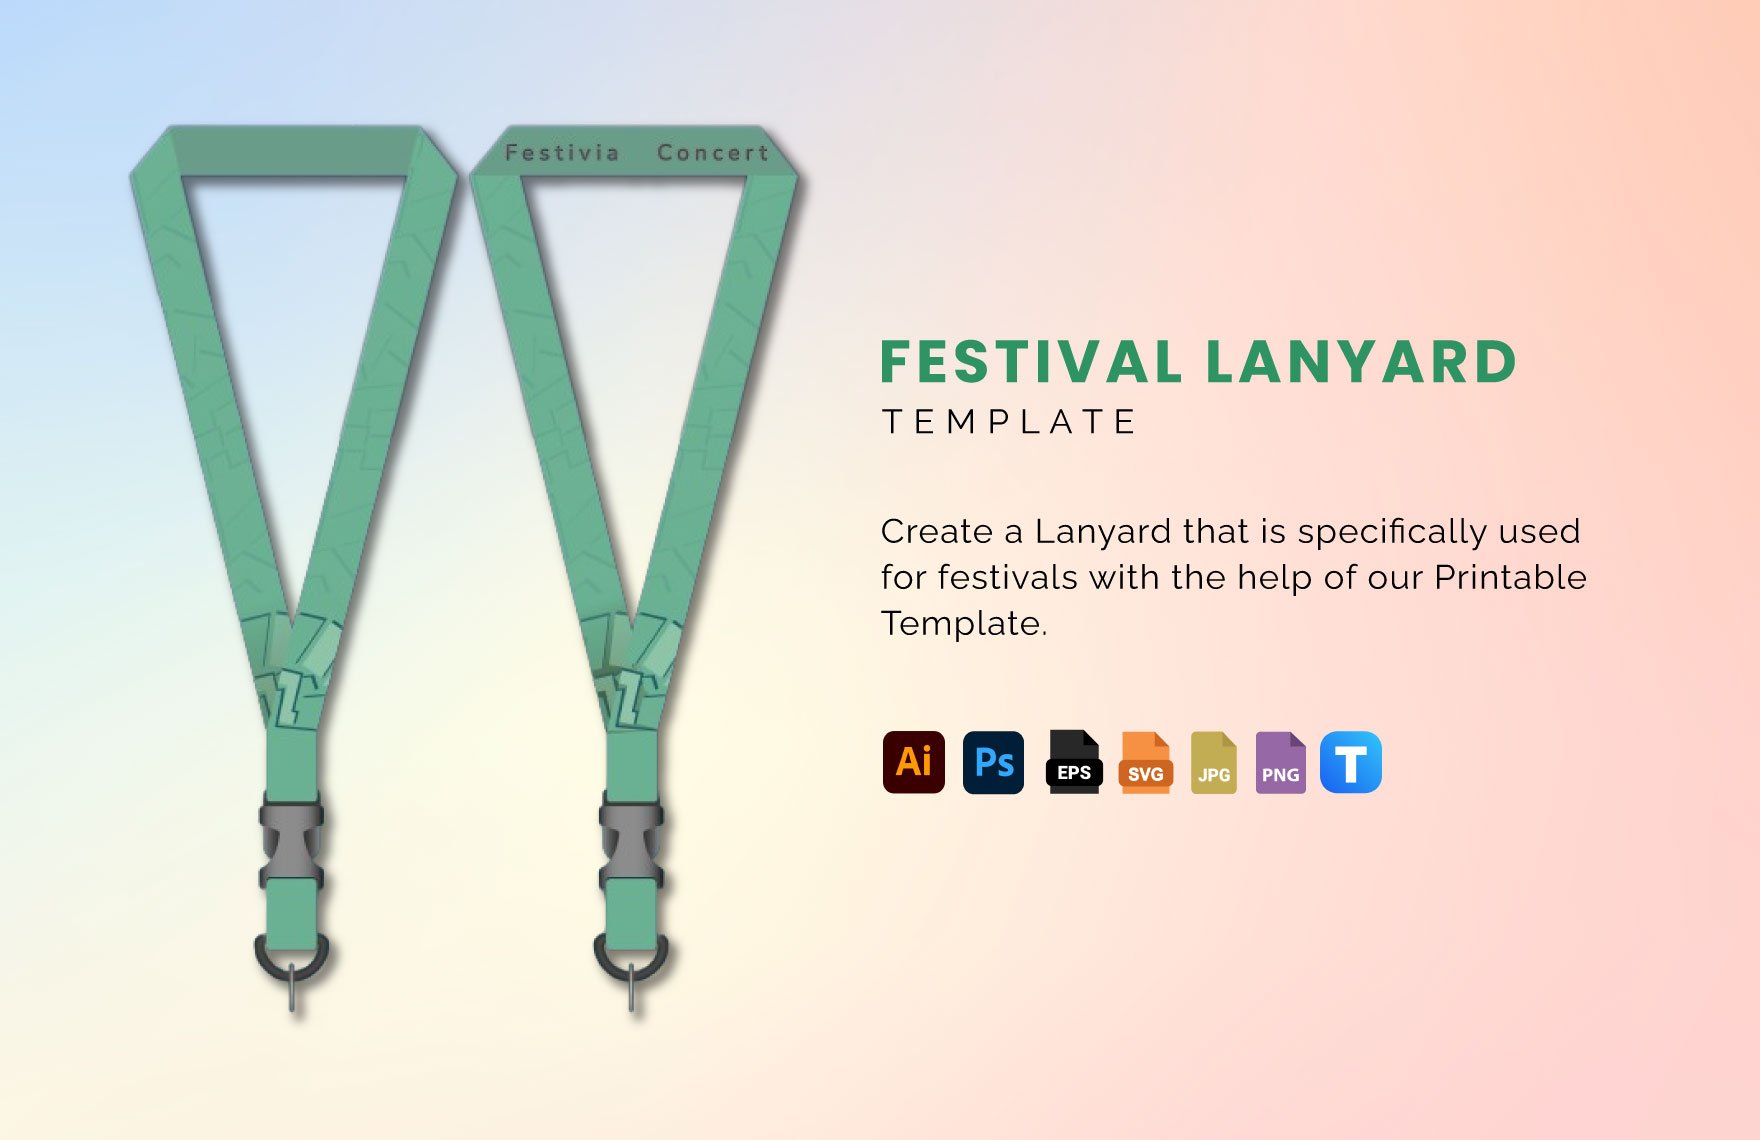 Festival Lanyard Template in Illustrator, PSD, EPS, SVG, JPG, PNG